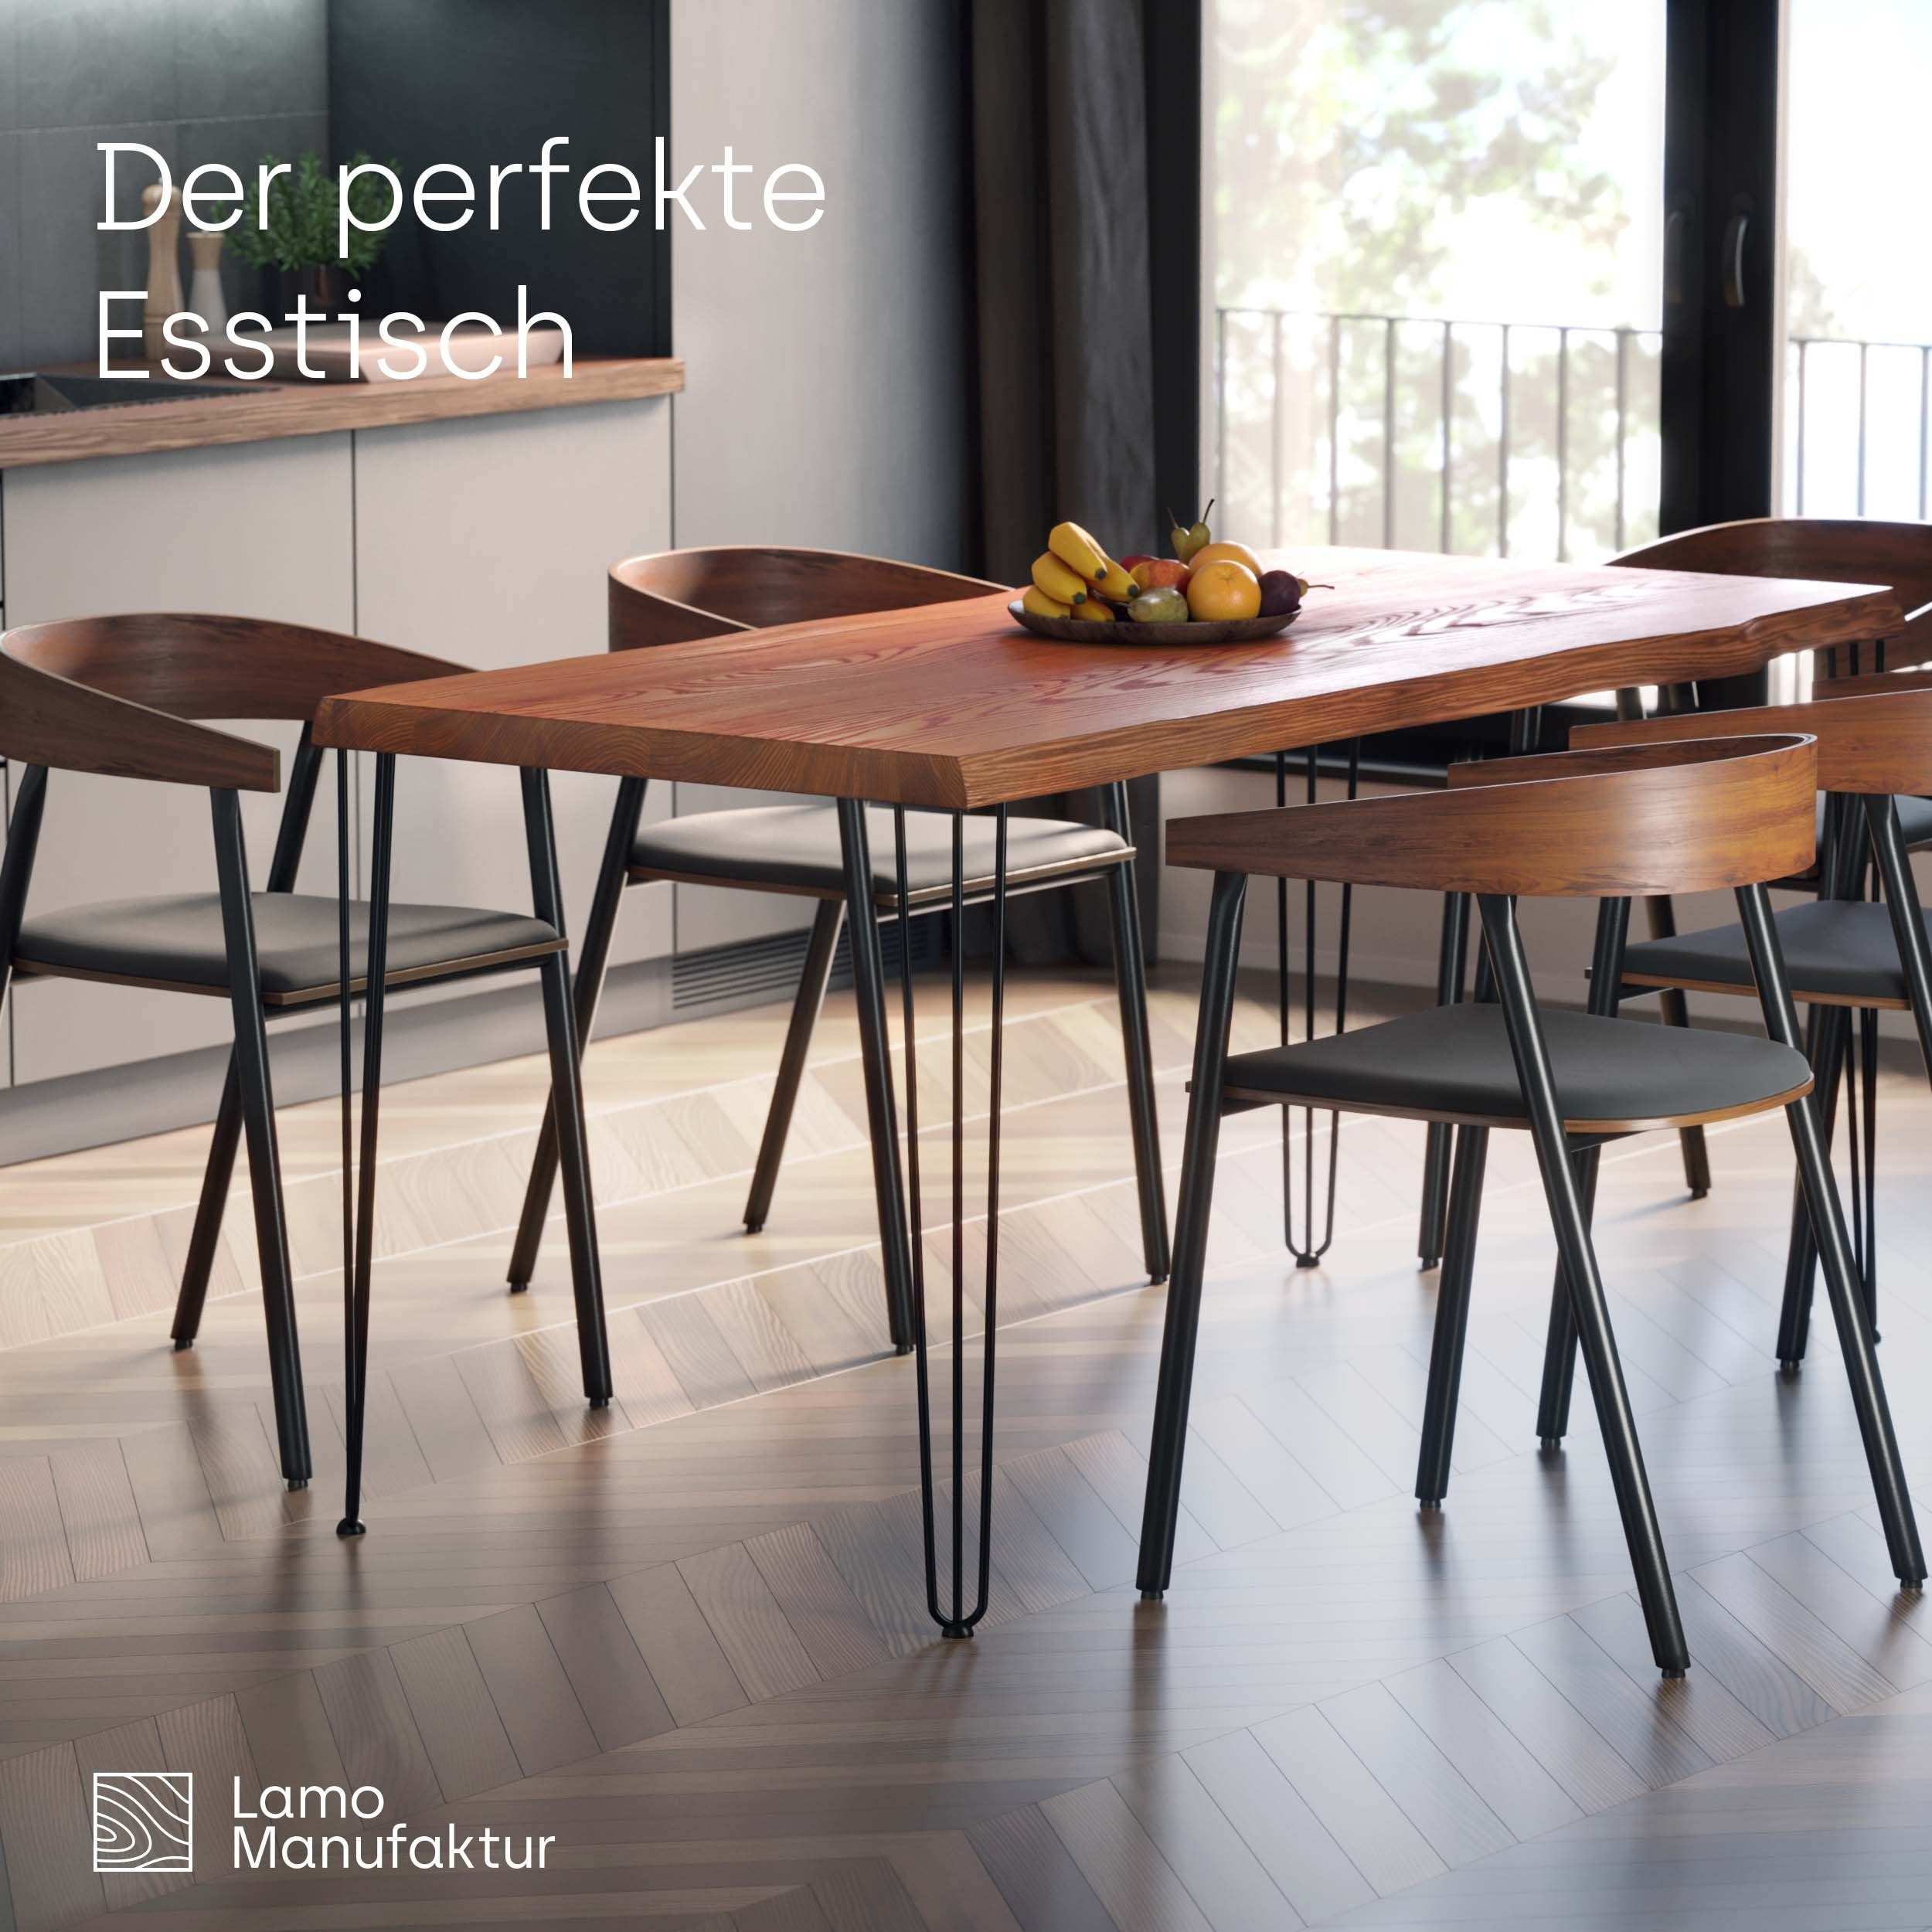 (1 LAMO Metallgestell Creative massiv Baumkante inkl. | Natur Schwarz Tisch), Massivholz Esstisch Baumkantentisch Manufaktur